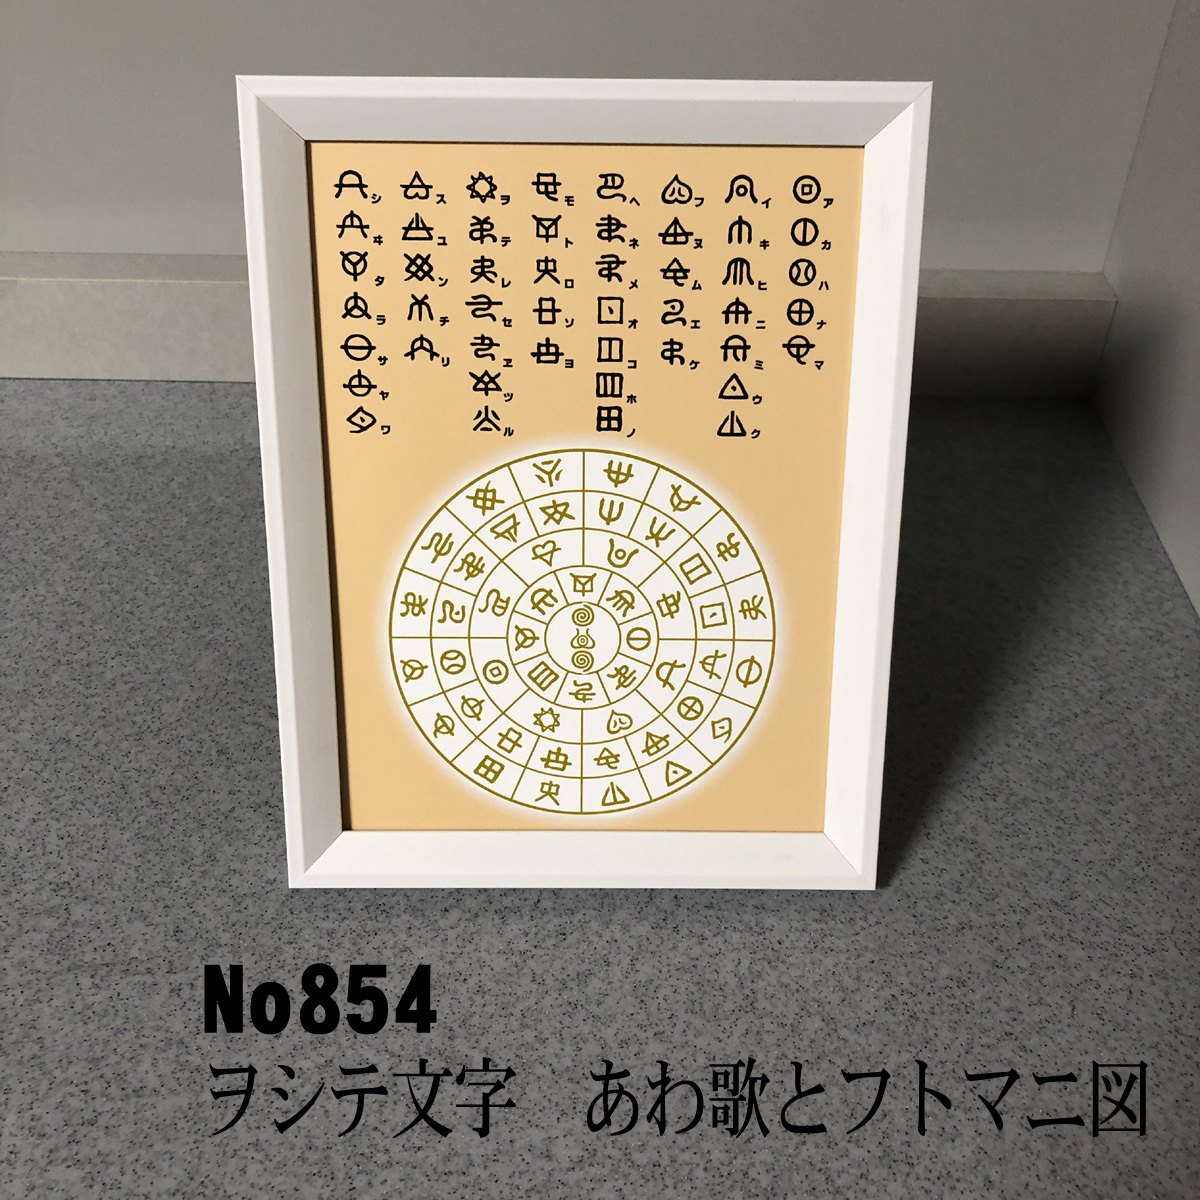 Personajes de Oshite (Hotsuma), Figuras de Awauta y Futomani, marco simple incluido, NO854, Artículos hechos a mano, interior, bienes varios, otros